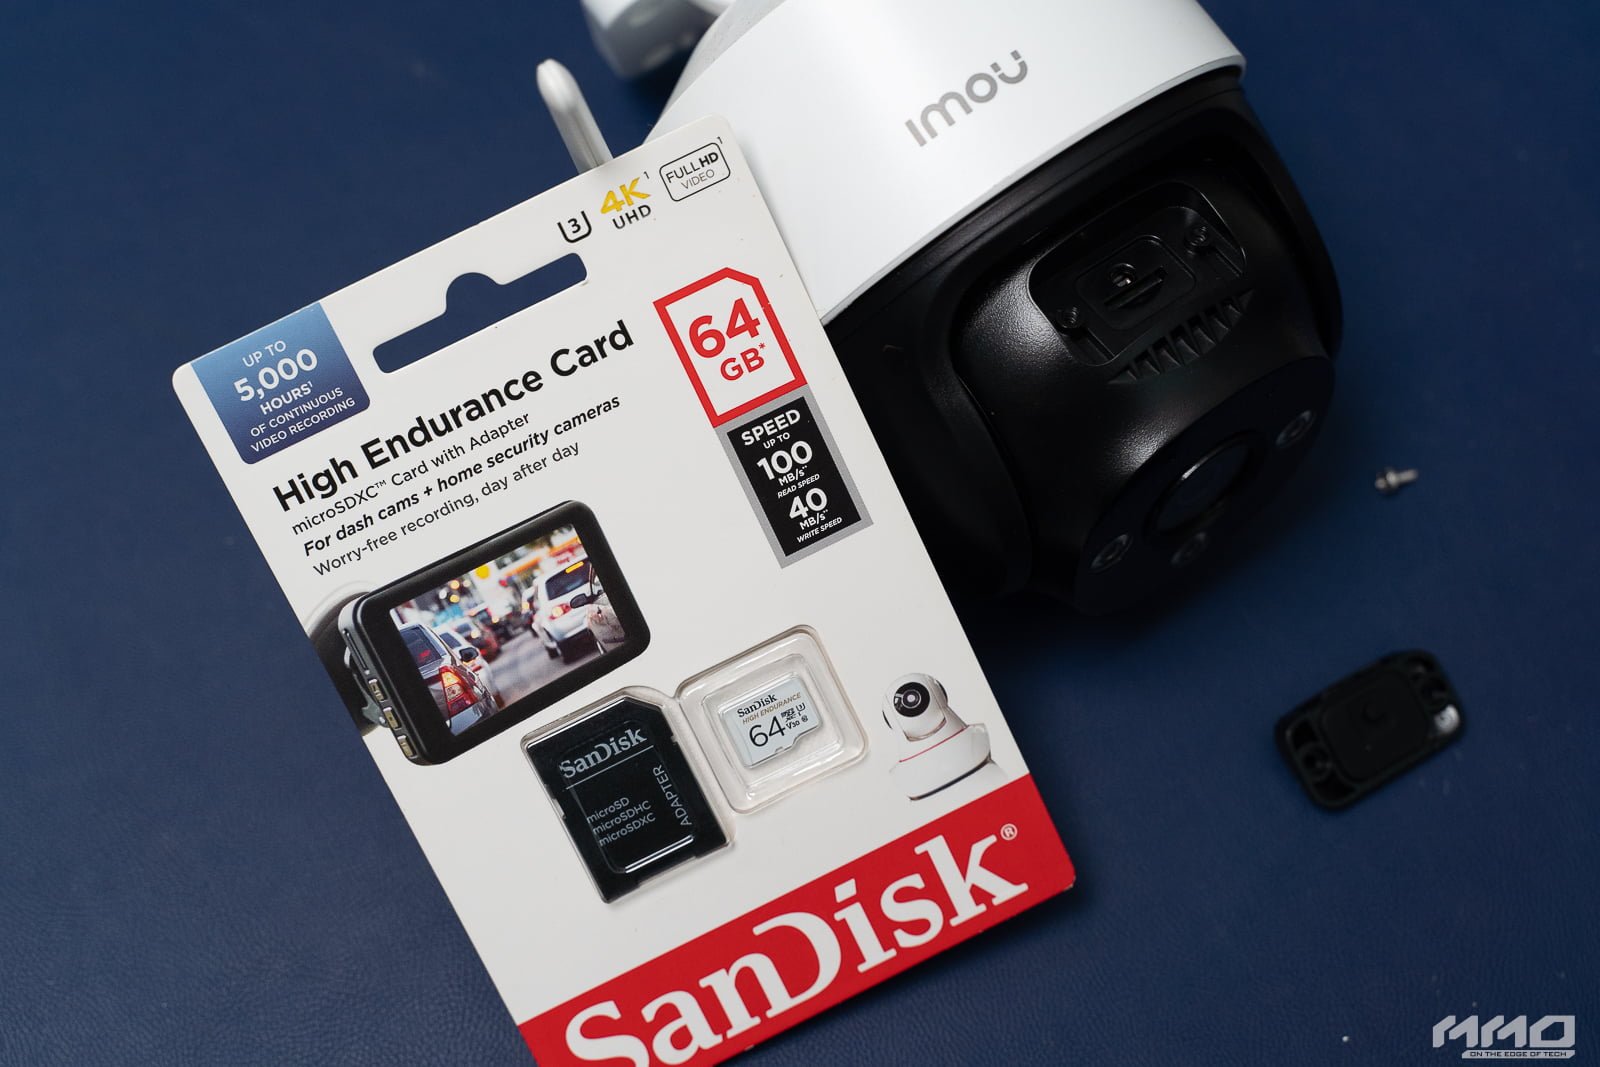 Đánh giá thẻ nhớ Sandisk High Endurance: lựa chọn hoàn hảo cho hệ thống camera an ninh trong gia đình